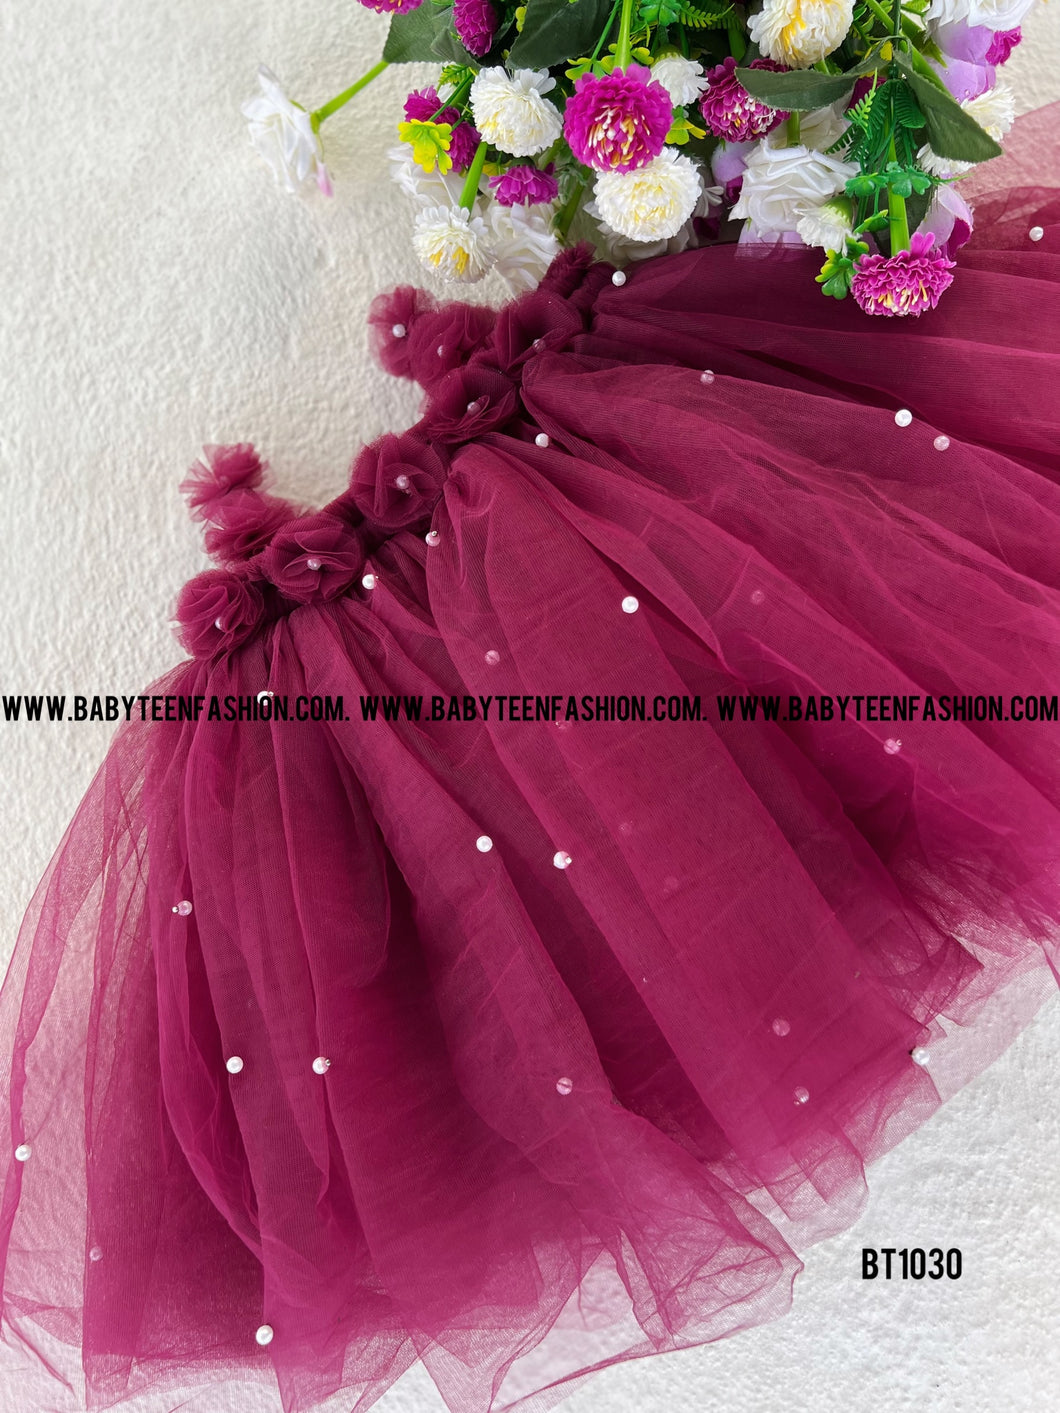 BT1030 Bordeaux Blooms Dress - Twirl in Whimsy